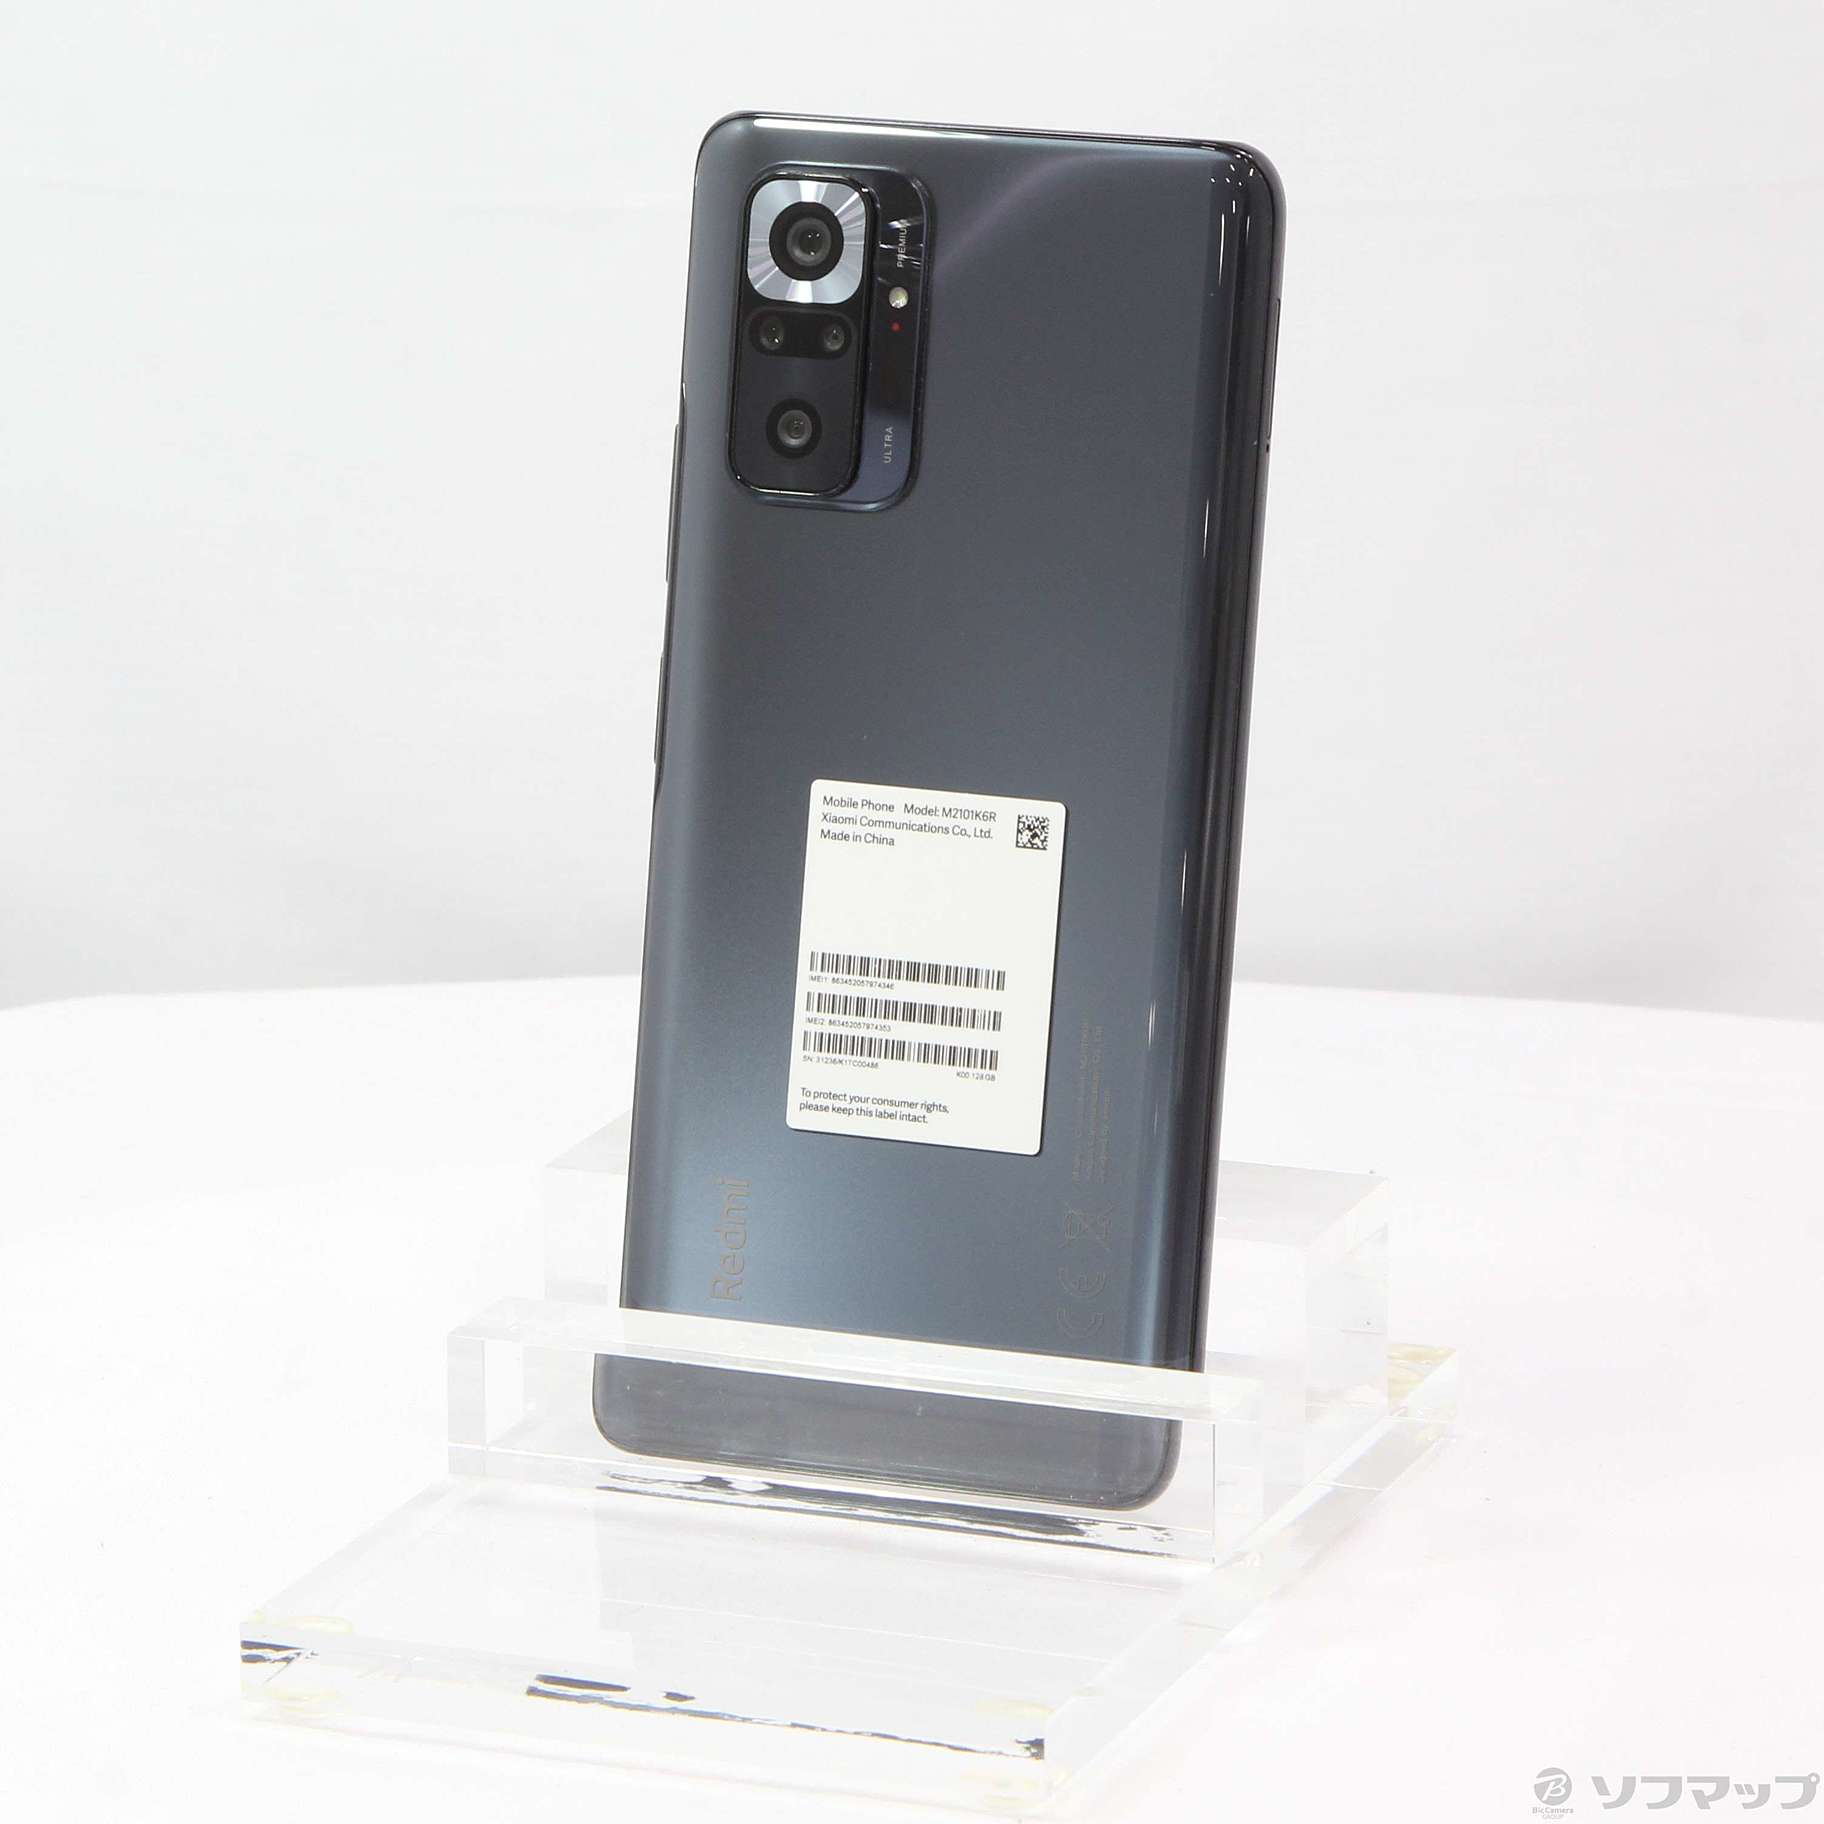 Redmi Note 10 Pro オニキスグレー